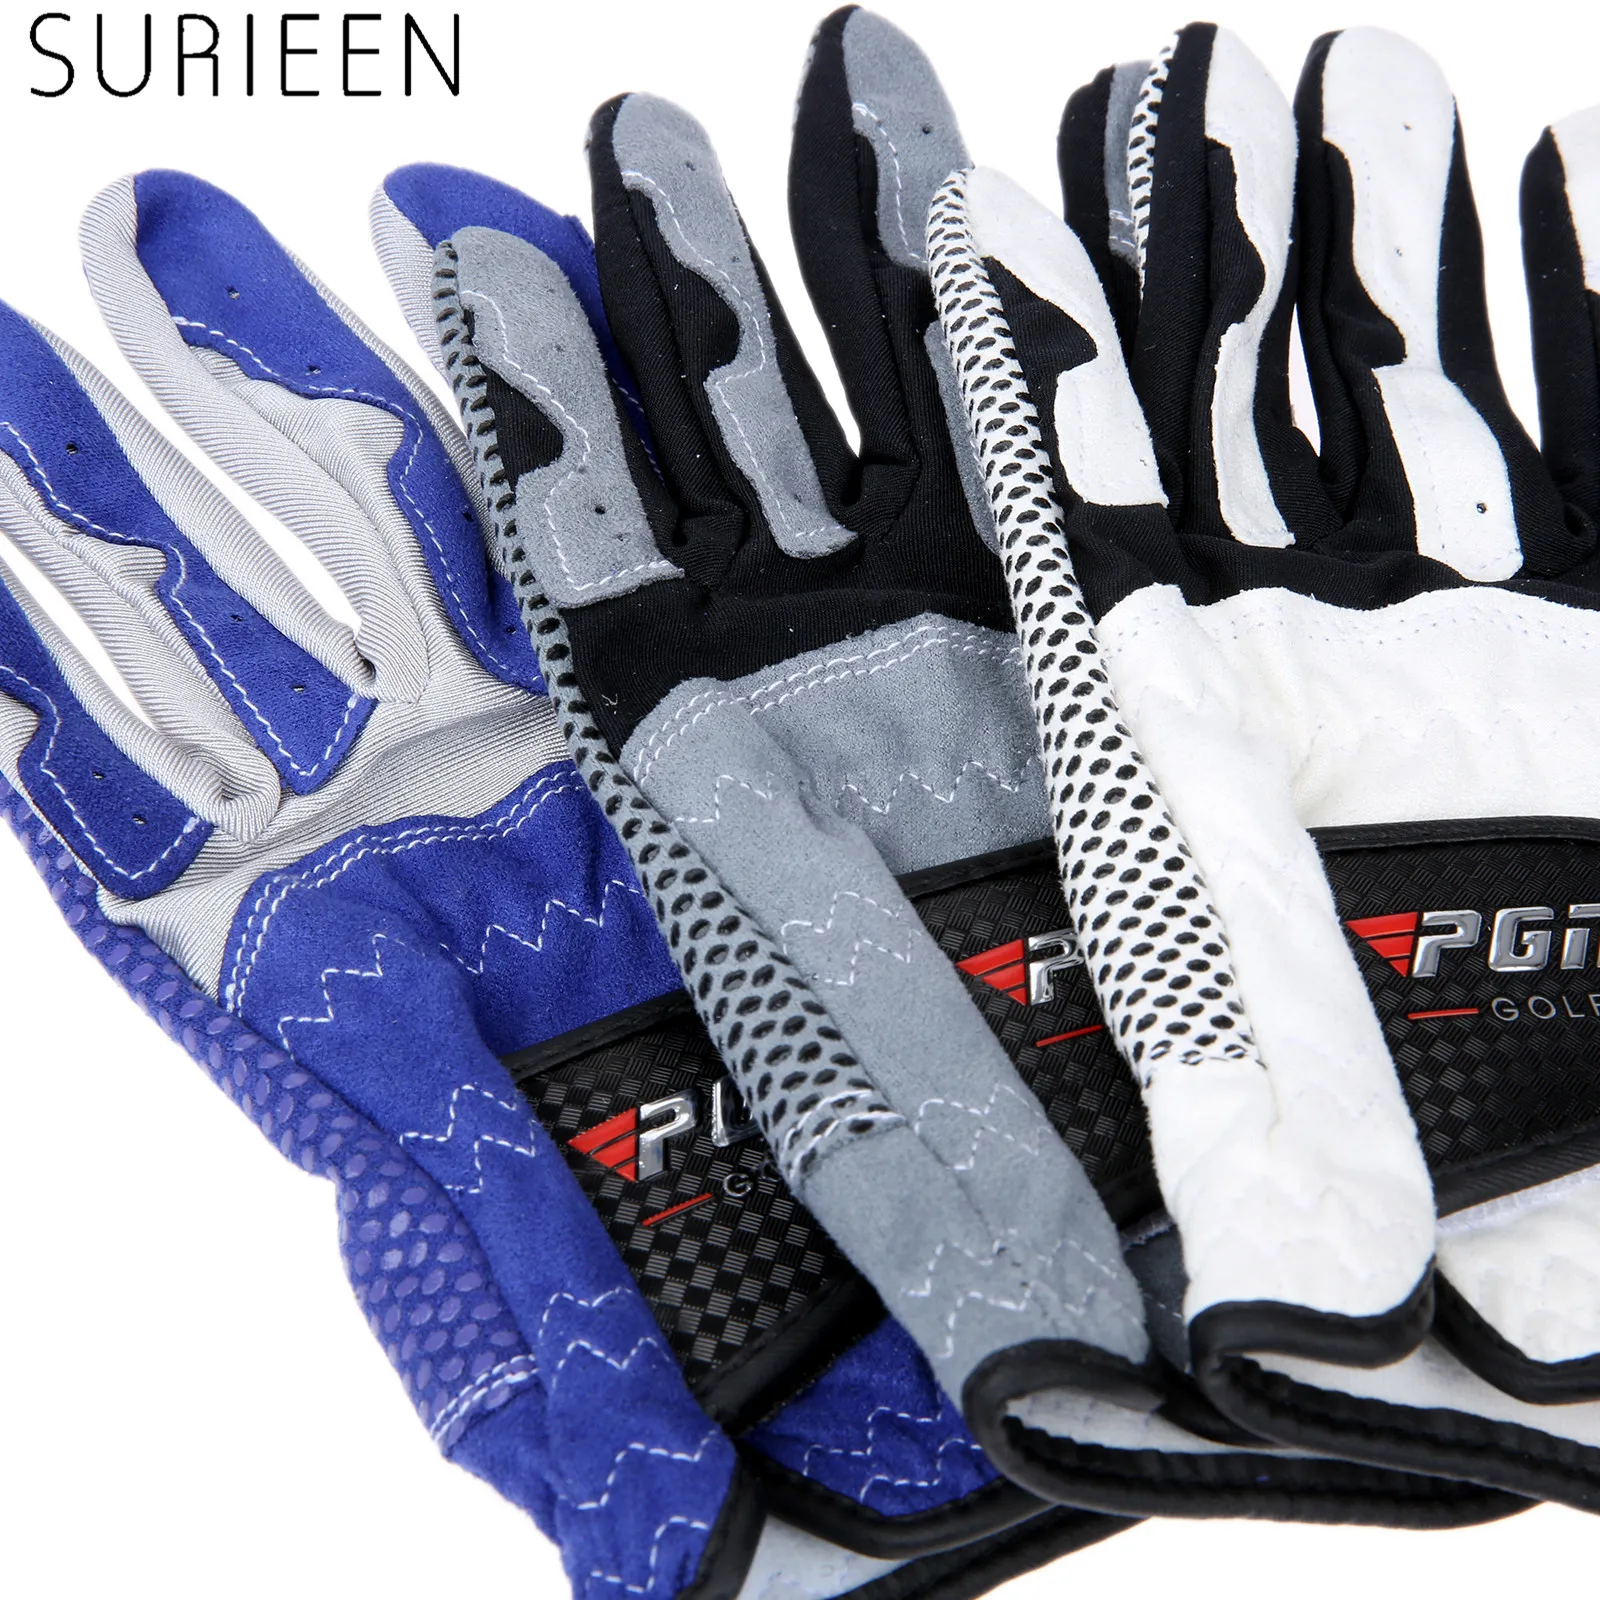 SURIEEN Новые перчатки для гольфа из микрофибры мужские мягкие дышащие противоскользящие мужские перчатки для гольфа для занятий спортом на открытом воздухе